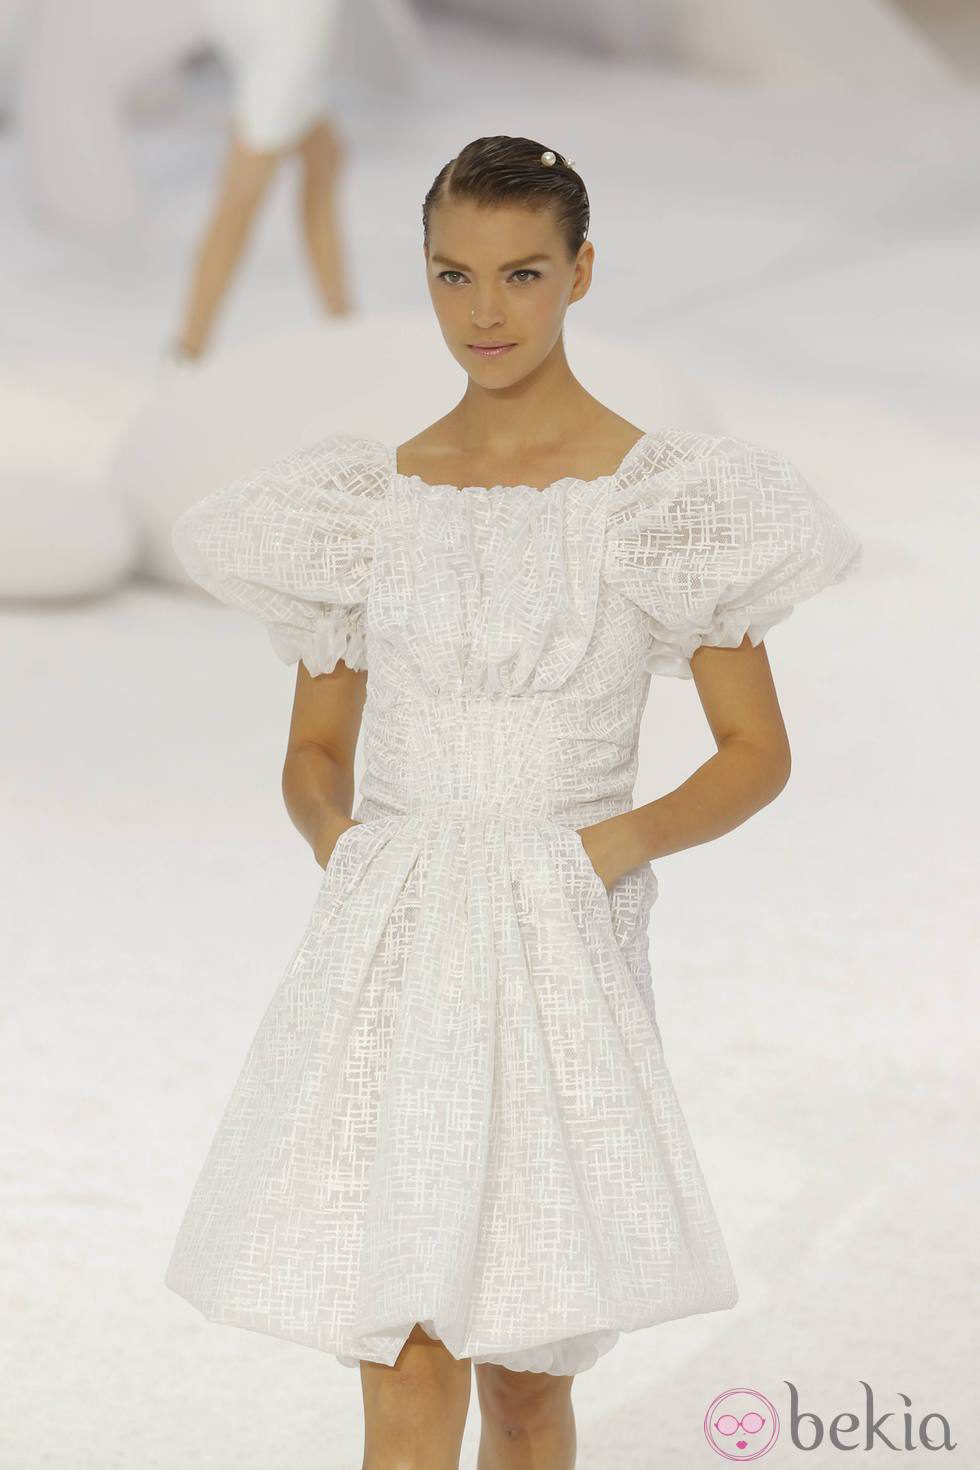 Vestido rodillero blanco, de Chanel, colección primavera 2012